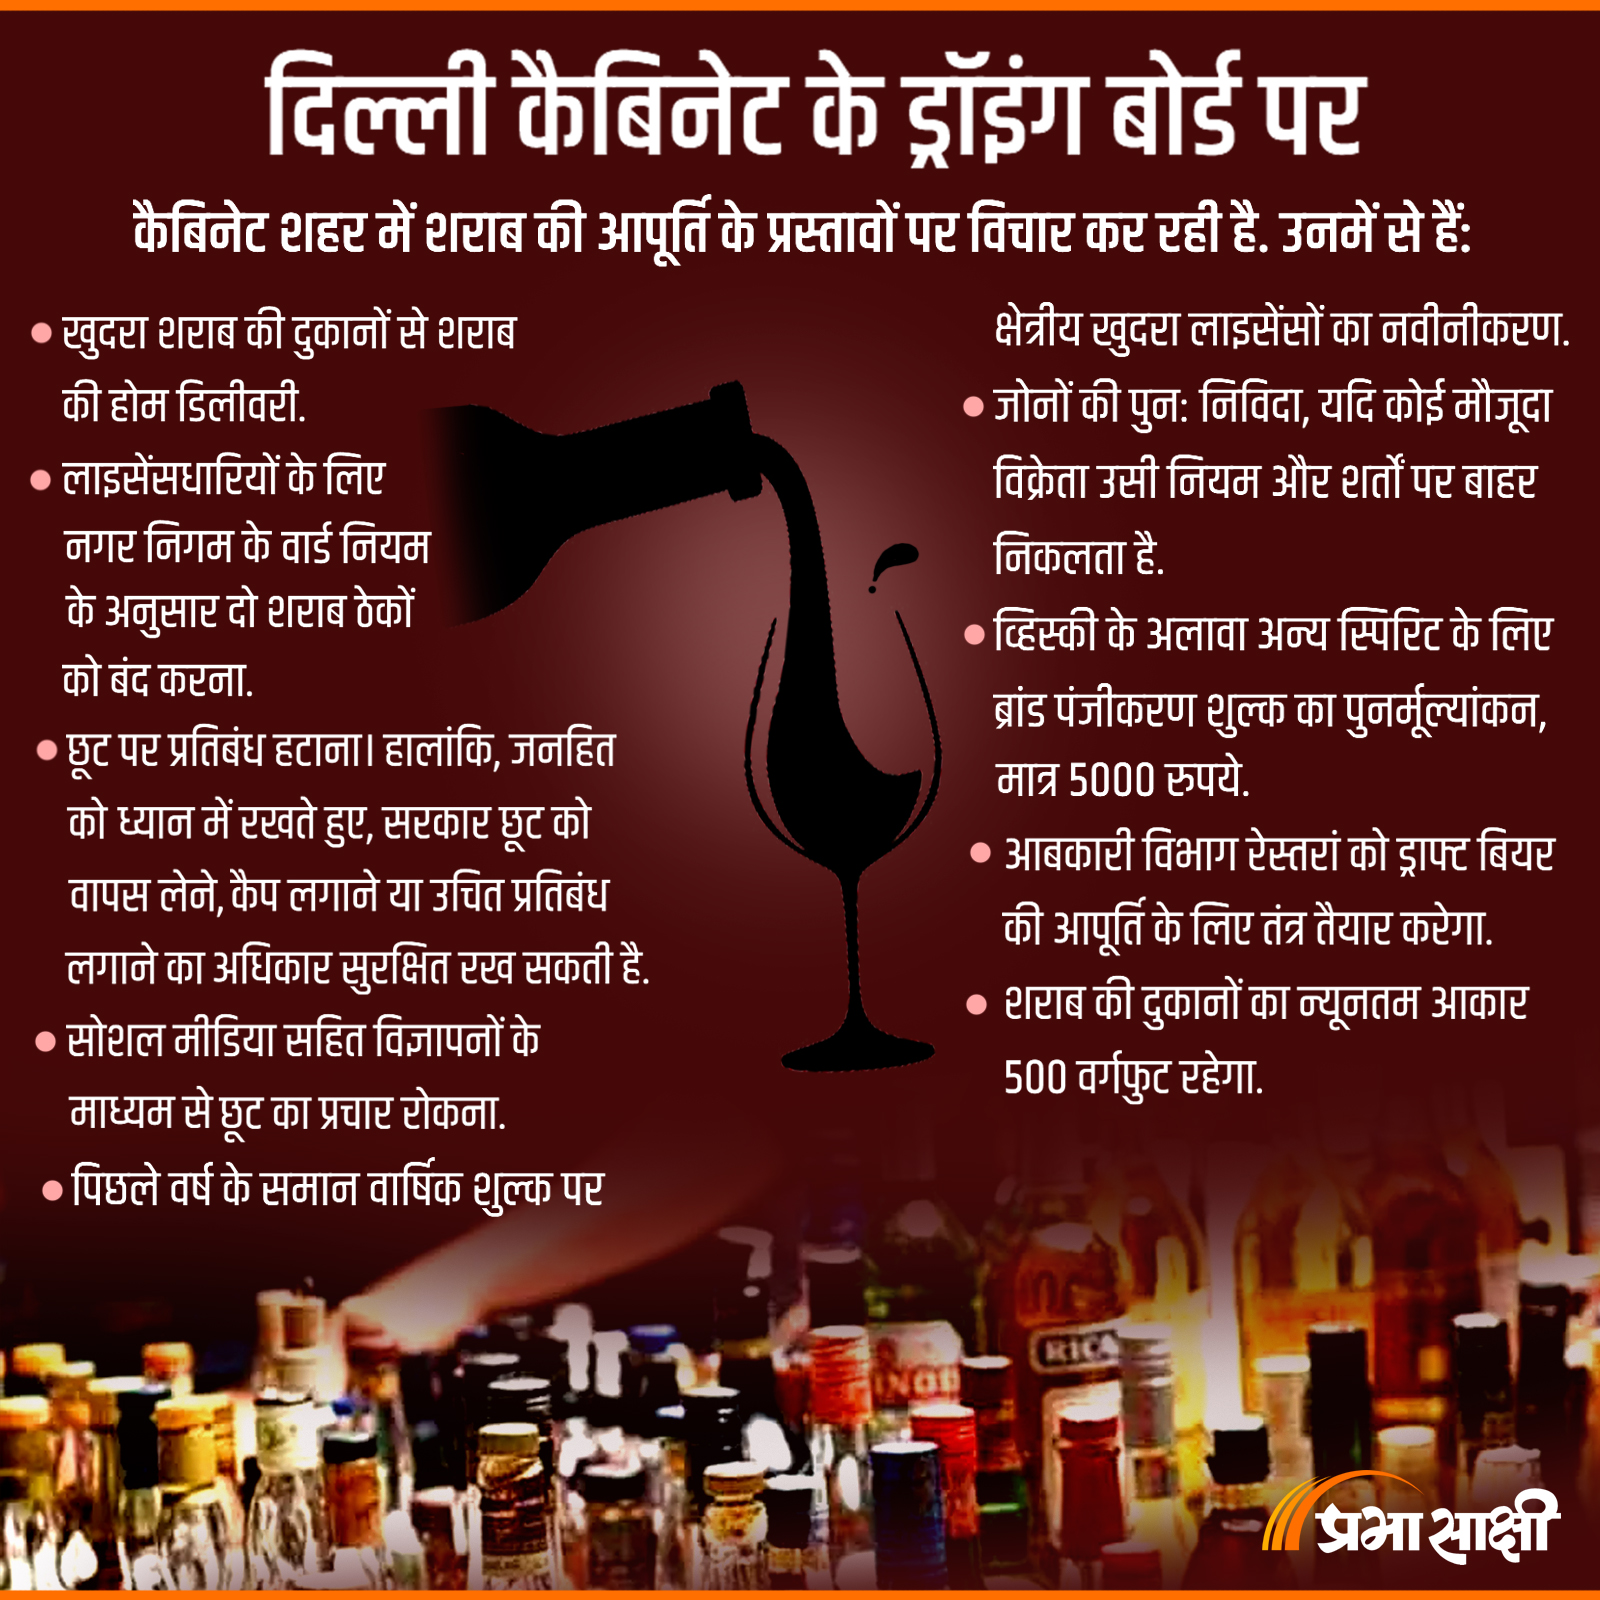 Supply of Liquor in Delhi